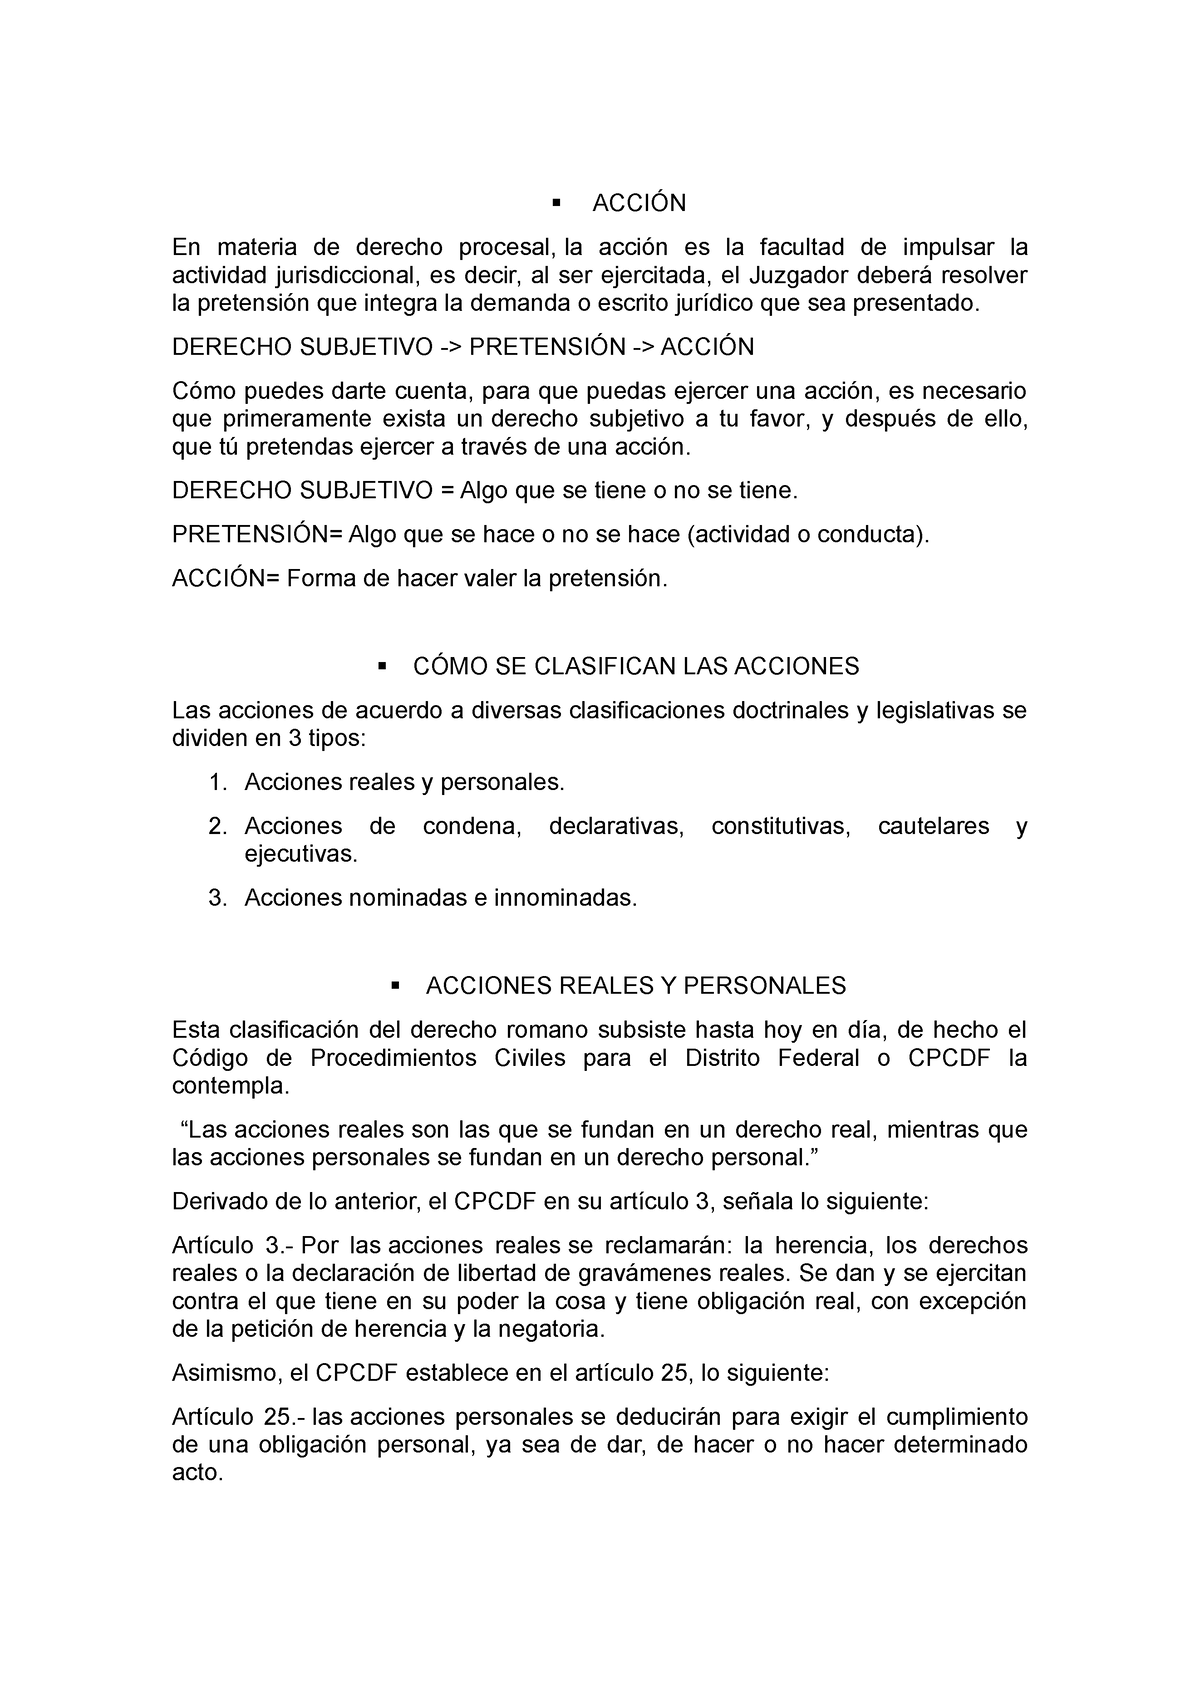 AccióN - ELEMENTOS DE PROCEDIBILIDAD - Derecho Civil - UNAM - Studocu